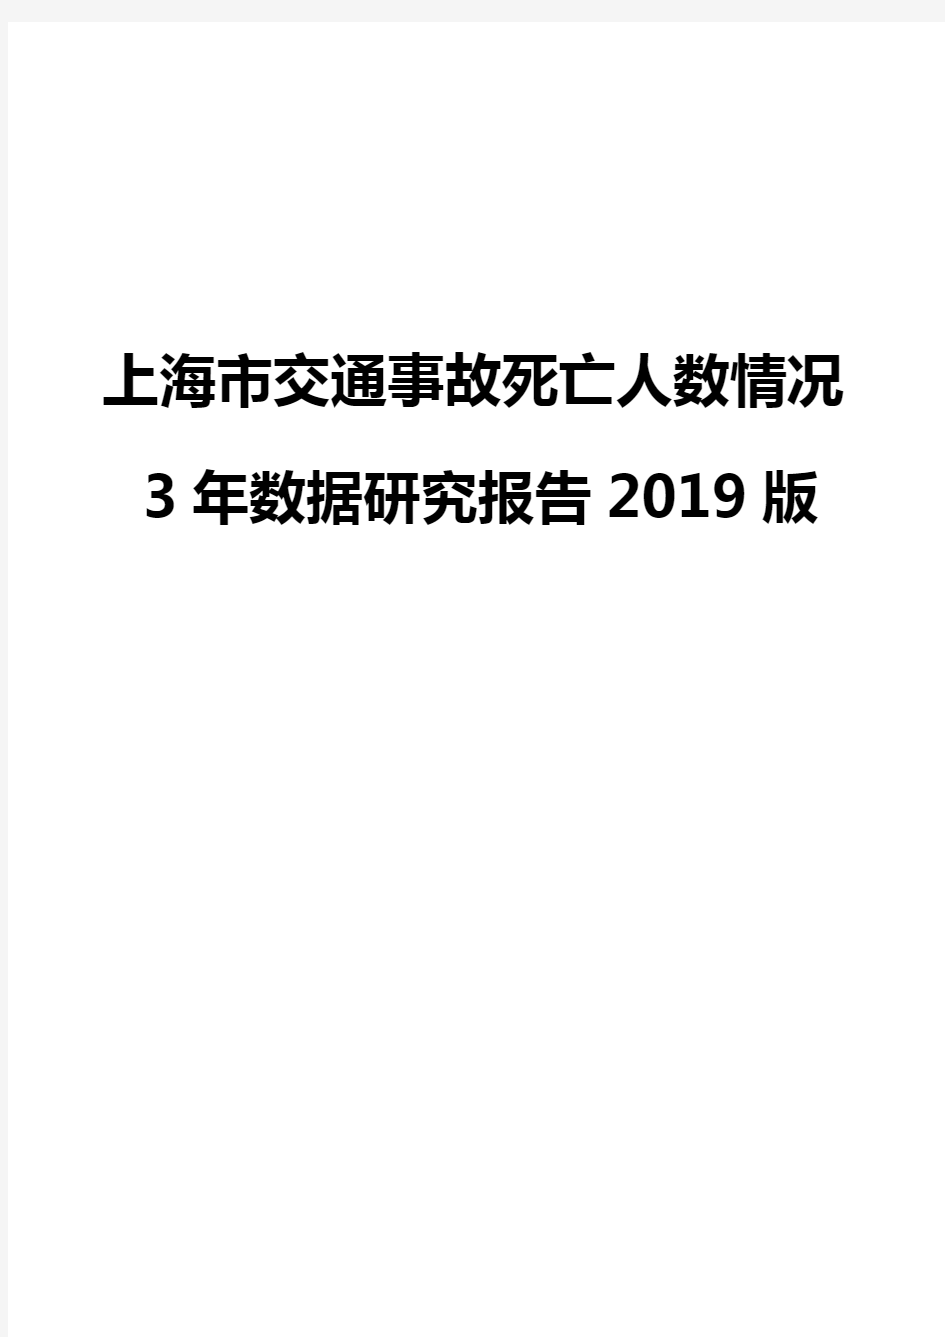 上海市交通事故死亡人数情况3年数据研究报告2019版